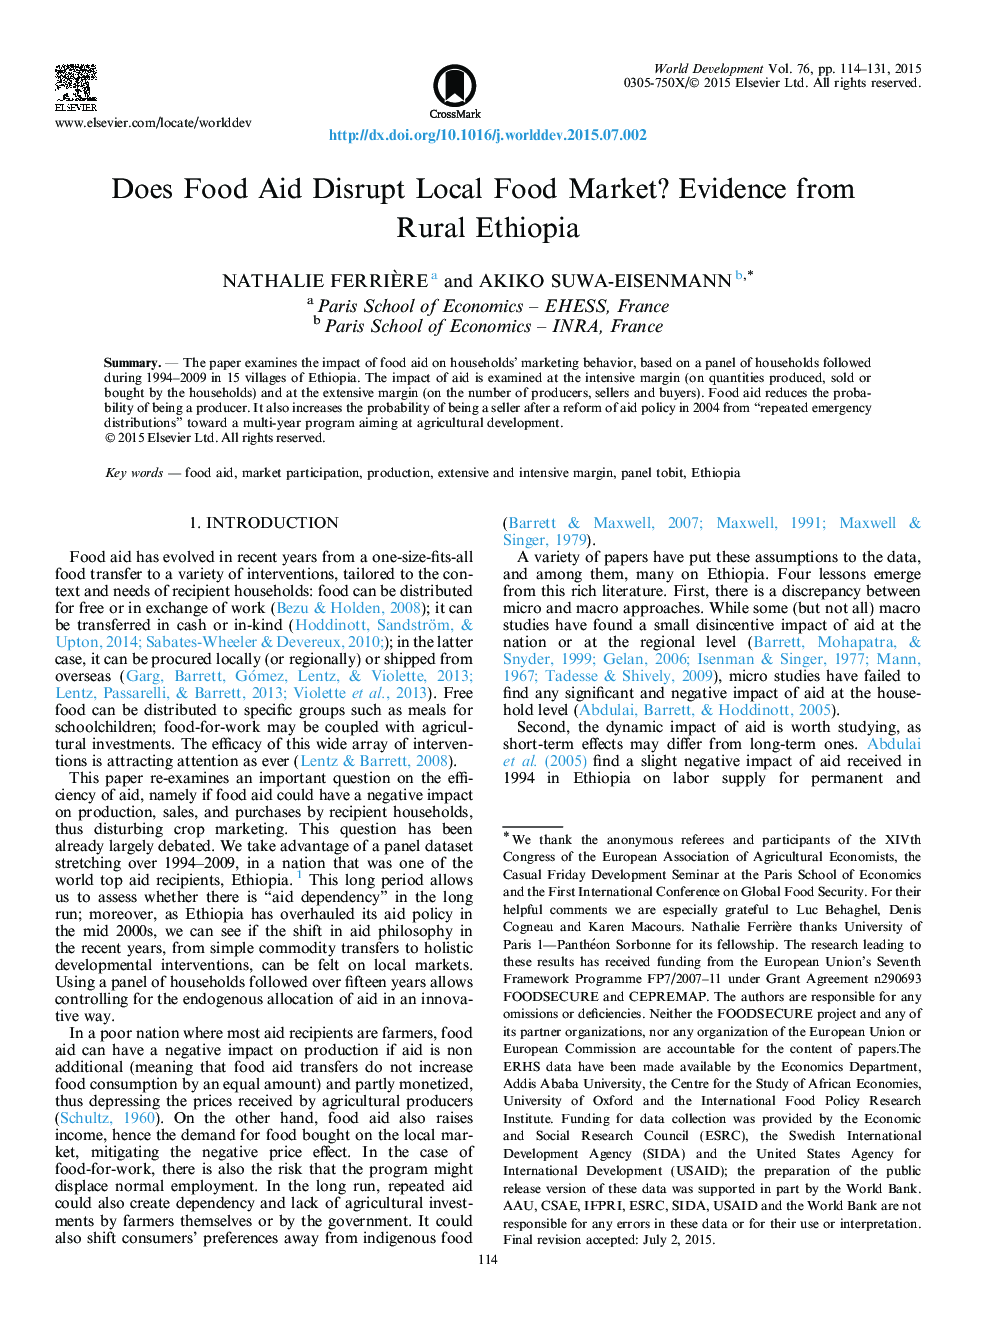 آیا کمک غذا بازار محلی مواد غذایی را مختل می کند؟ شواهد از اتیوپی روستایی 